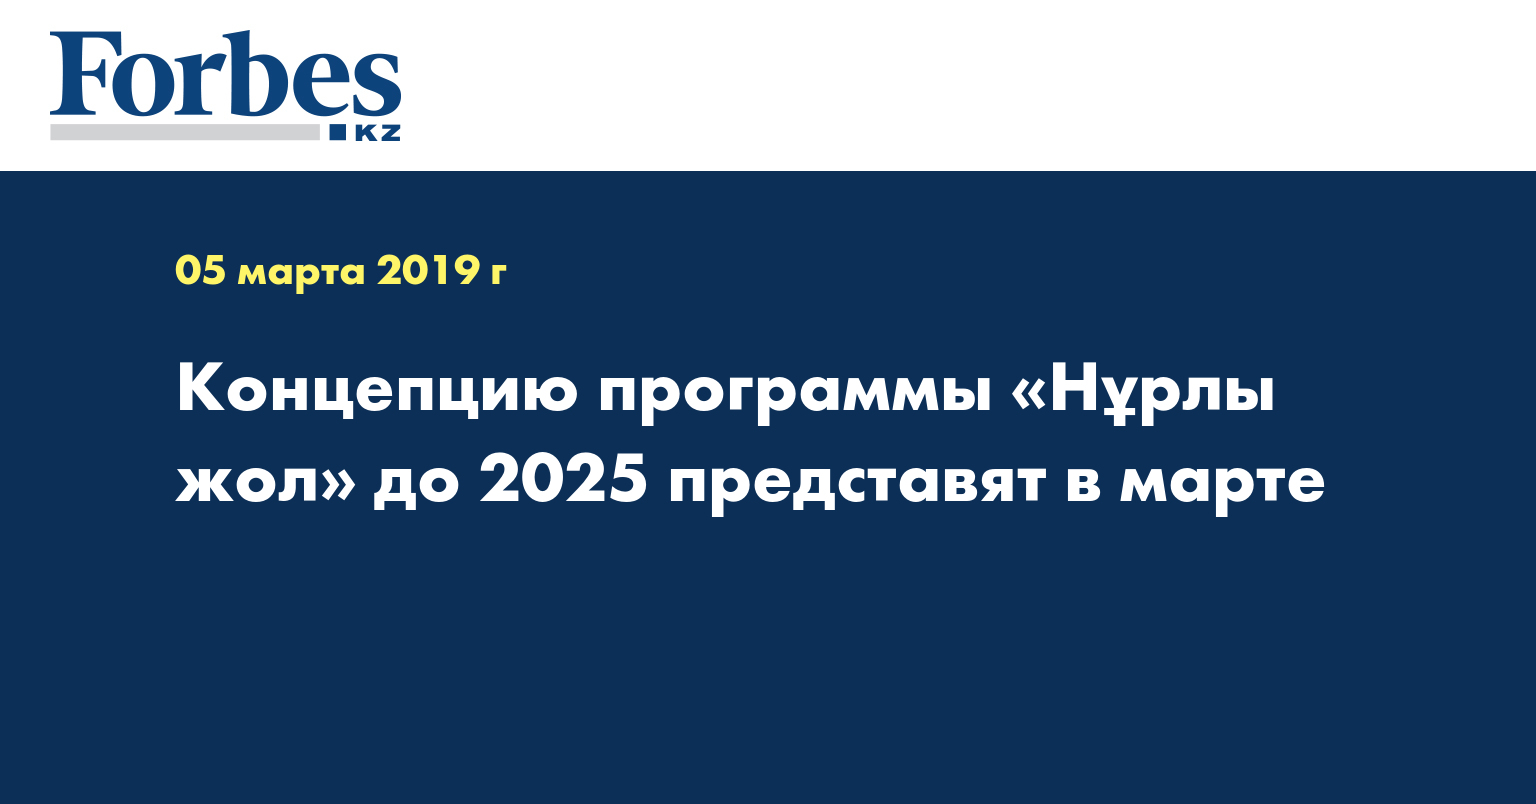 Концепцию программы «Нұрлы жол» до 2025 представят в марте